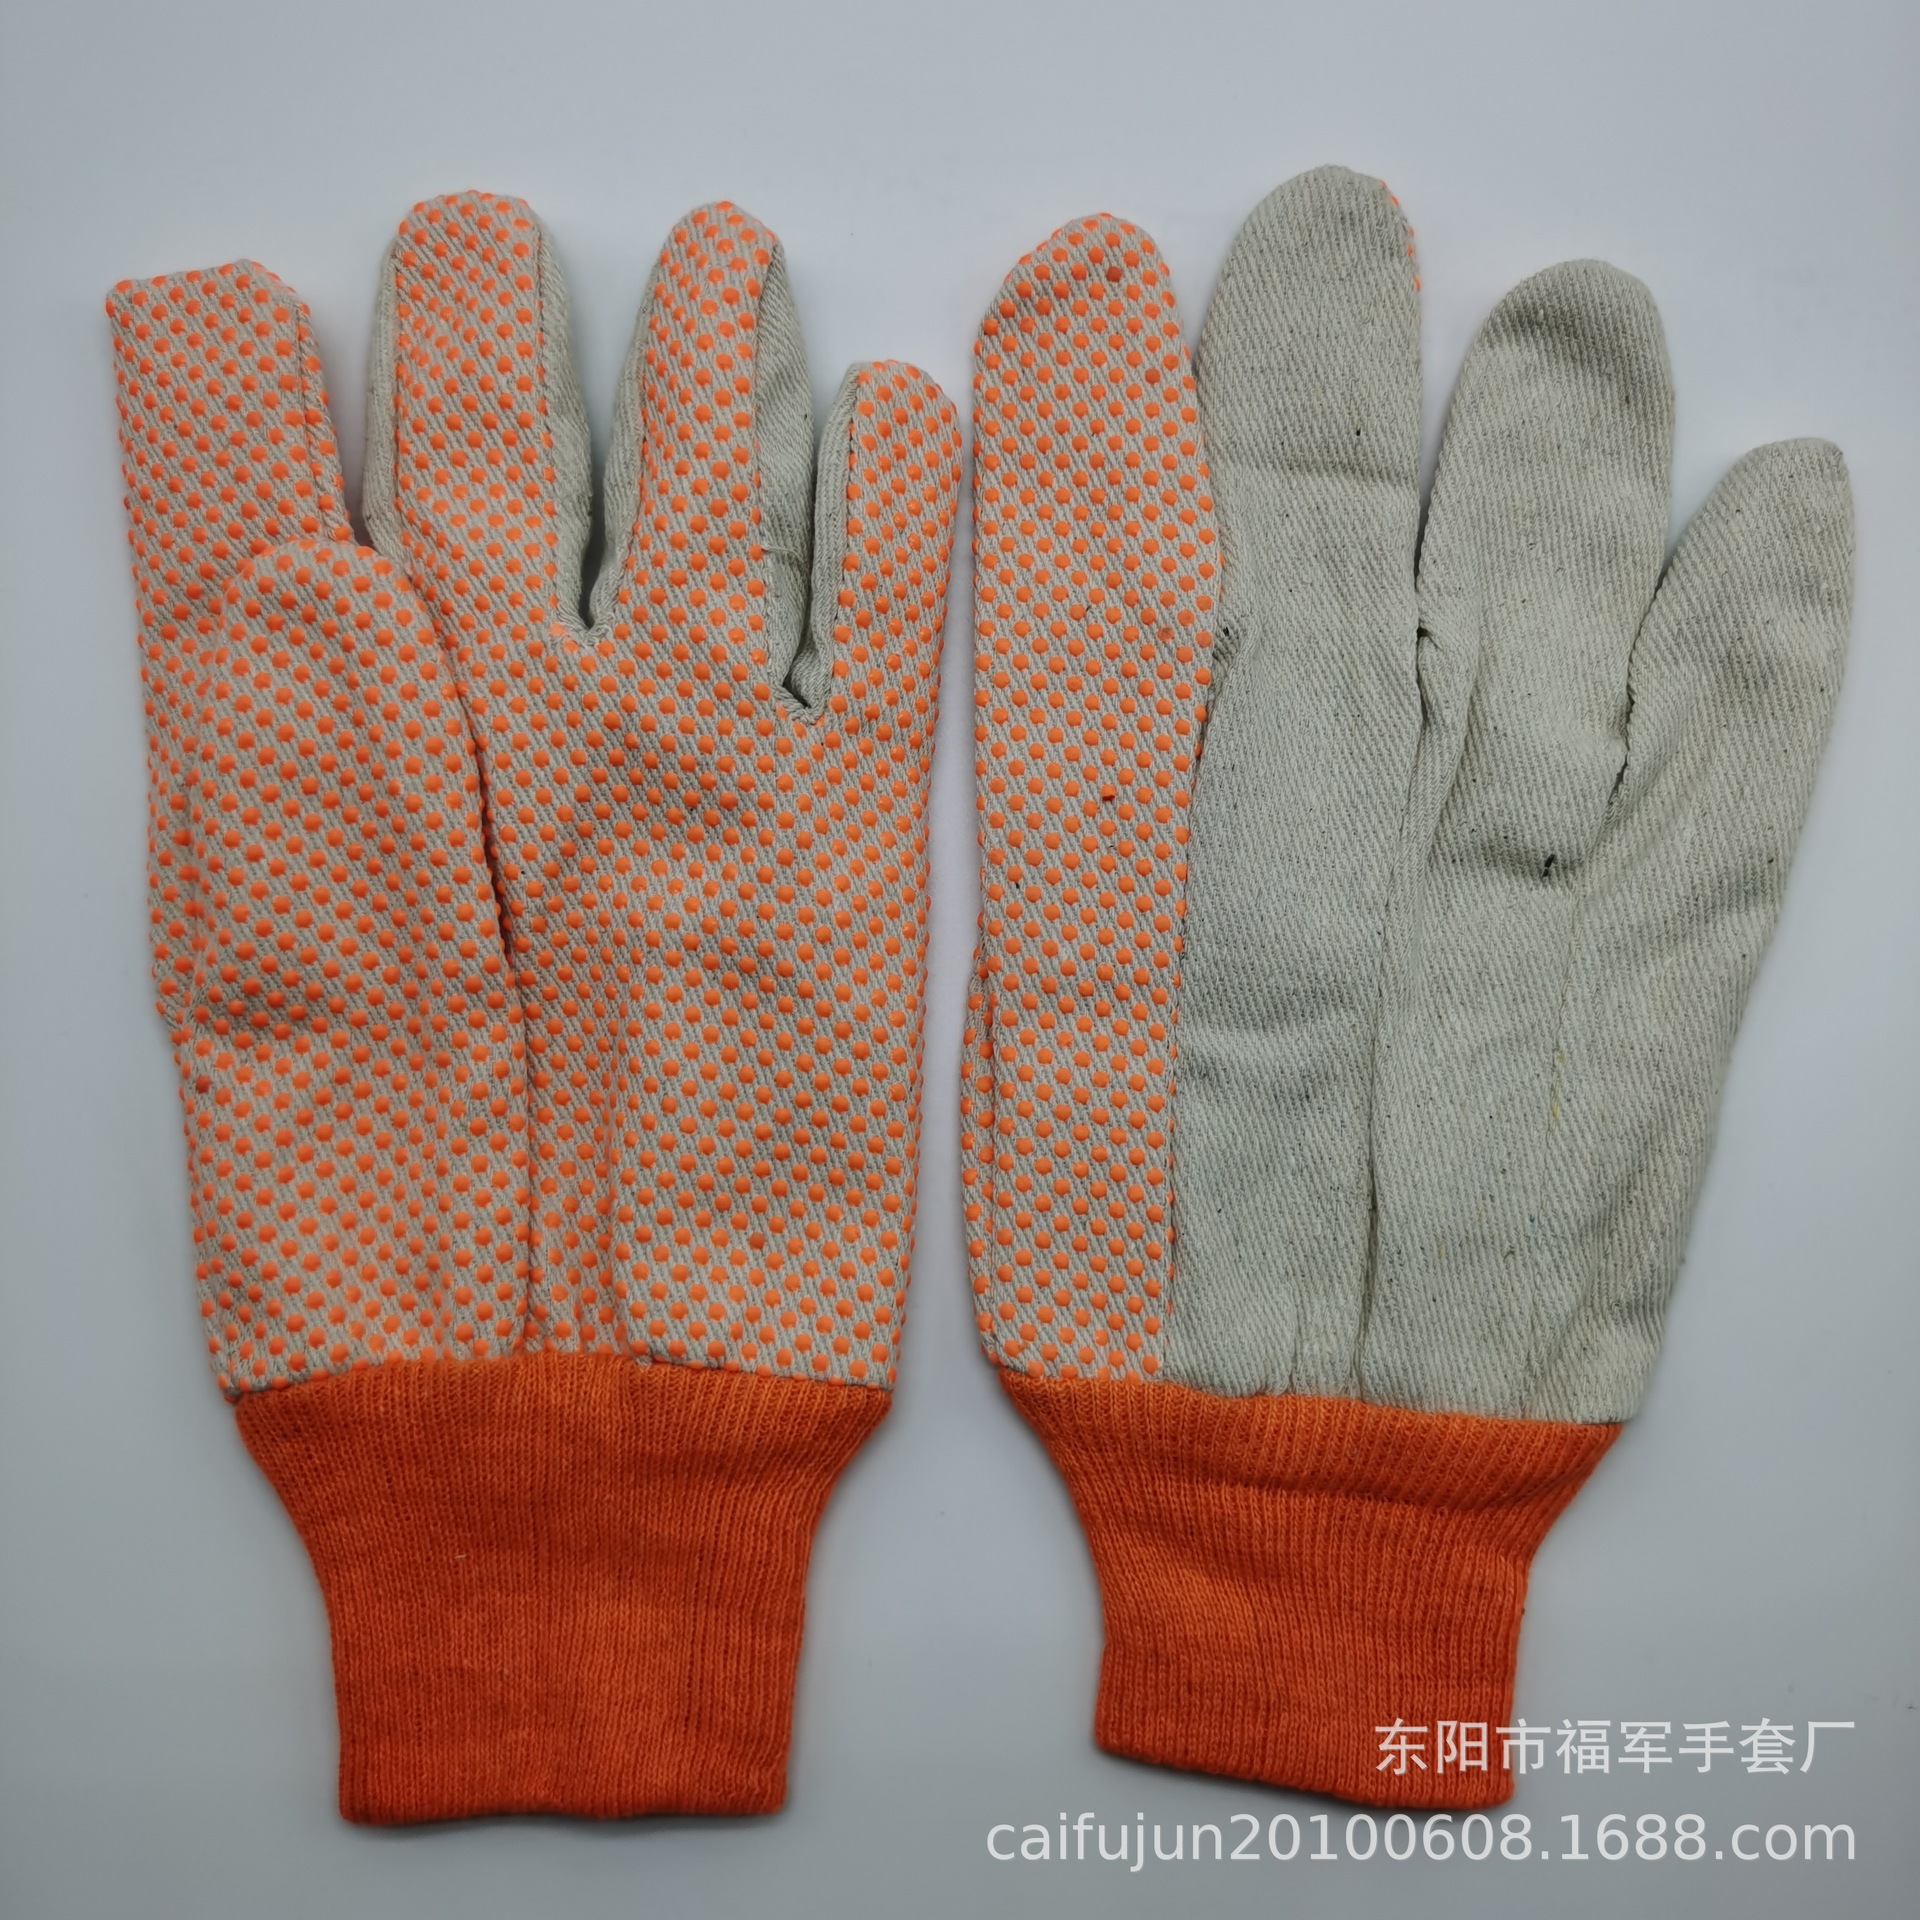 厂家直销针织绒布手套  防护手套 迷彩手套 花园手套